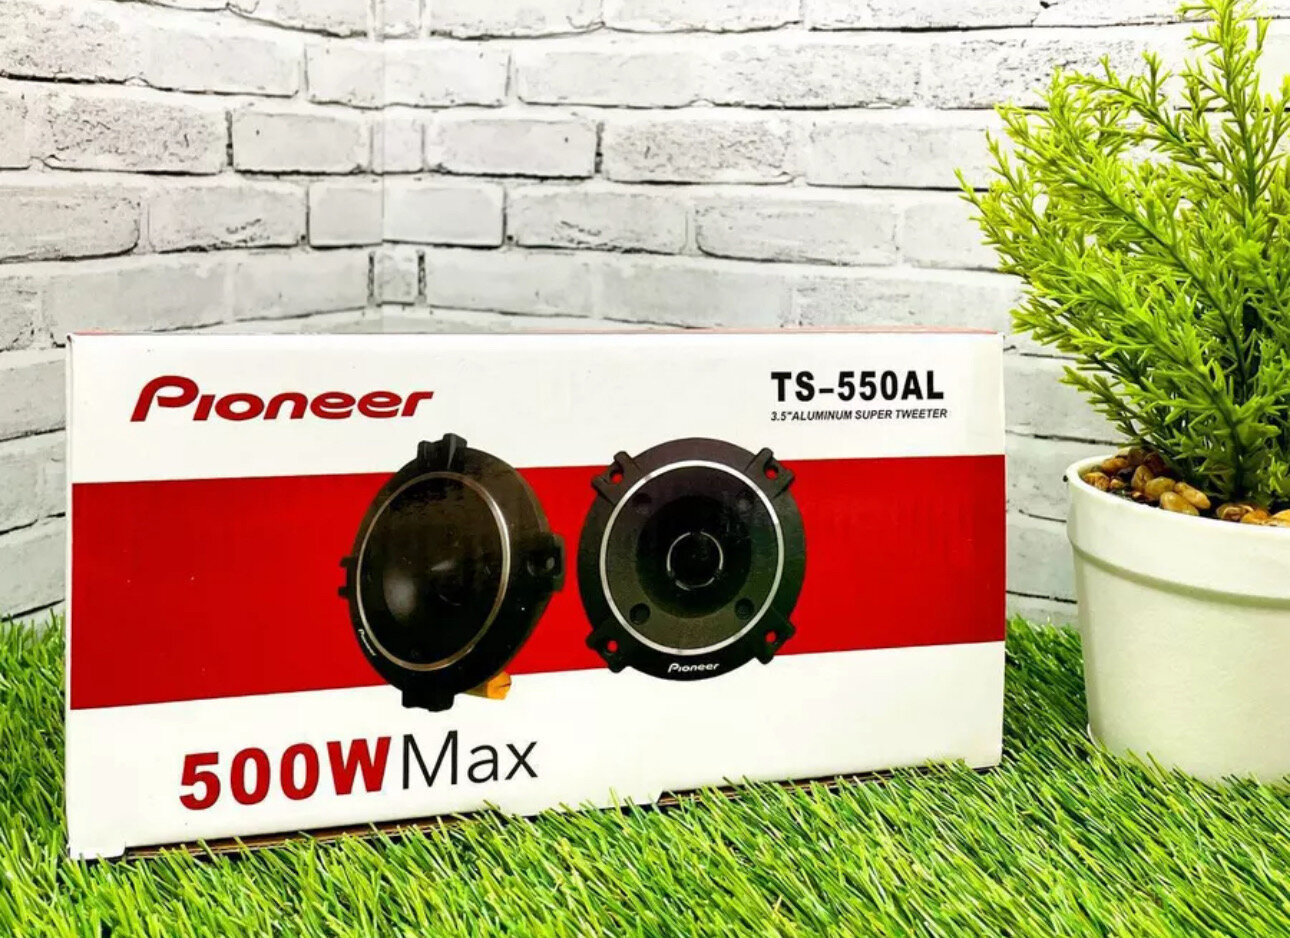 Рупора автомобильные, твитеры со встроенным фильтром "Pioneer TS-550AL" Комплект из 2 штук Высокочастотные динамики, пищалки, 98x98 мм, 50 Вт.